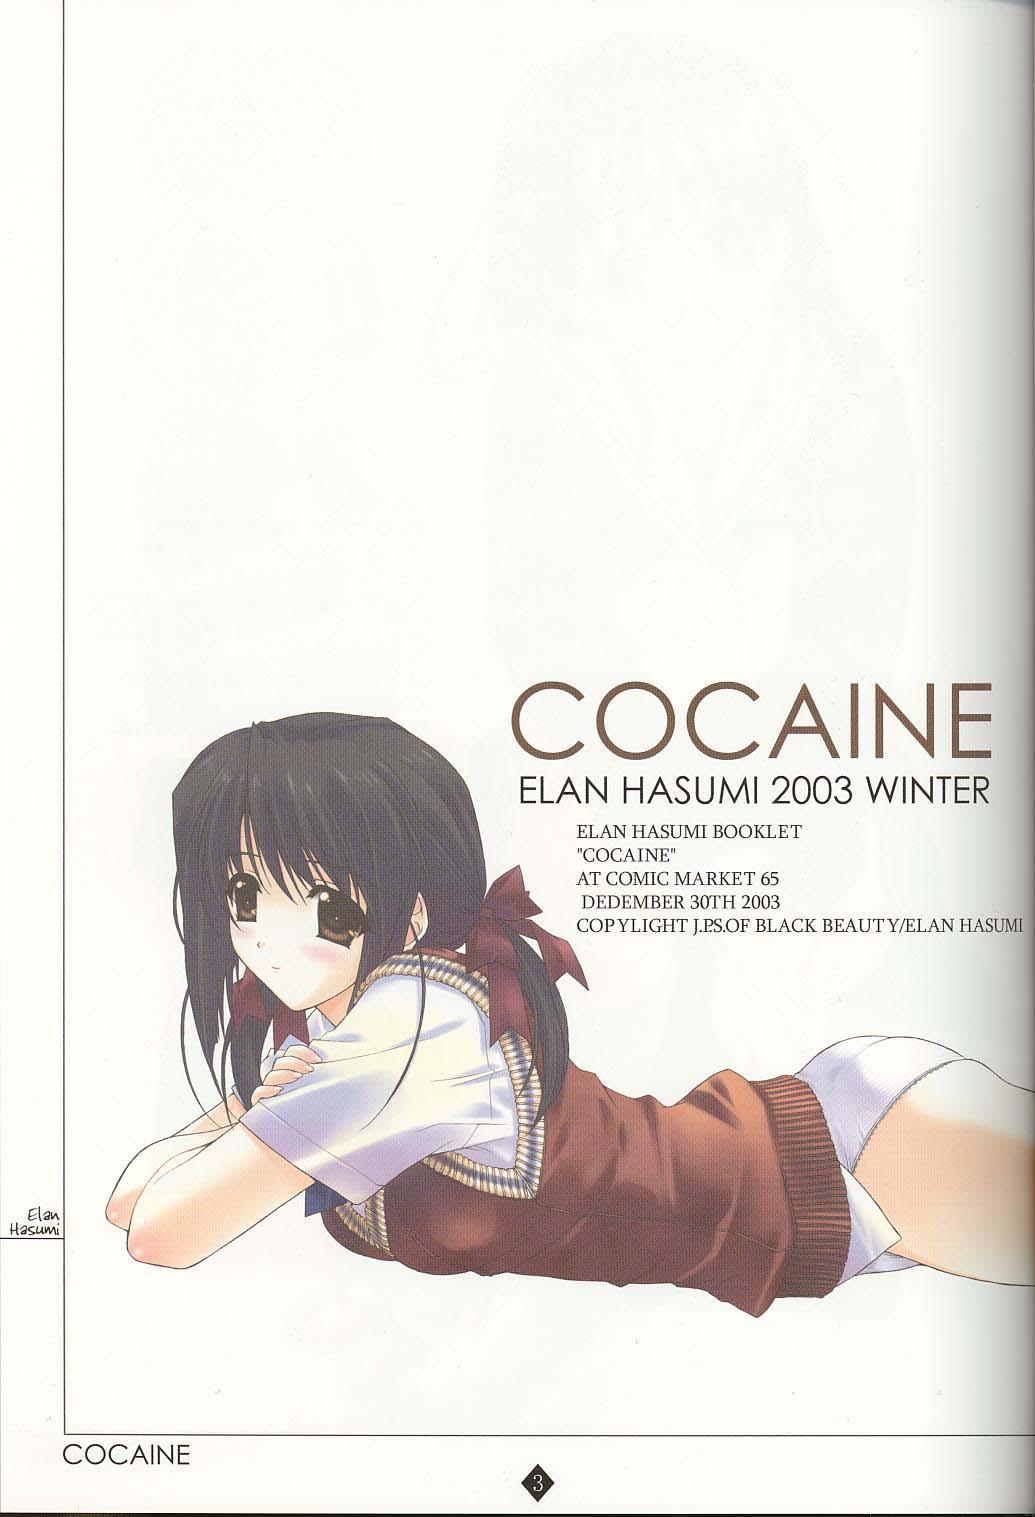 Cocaine 2